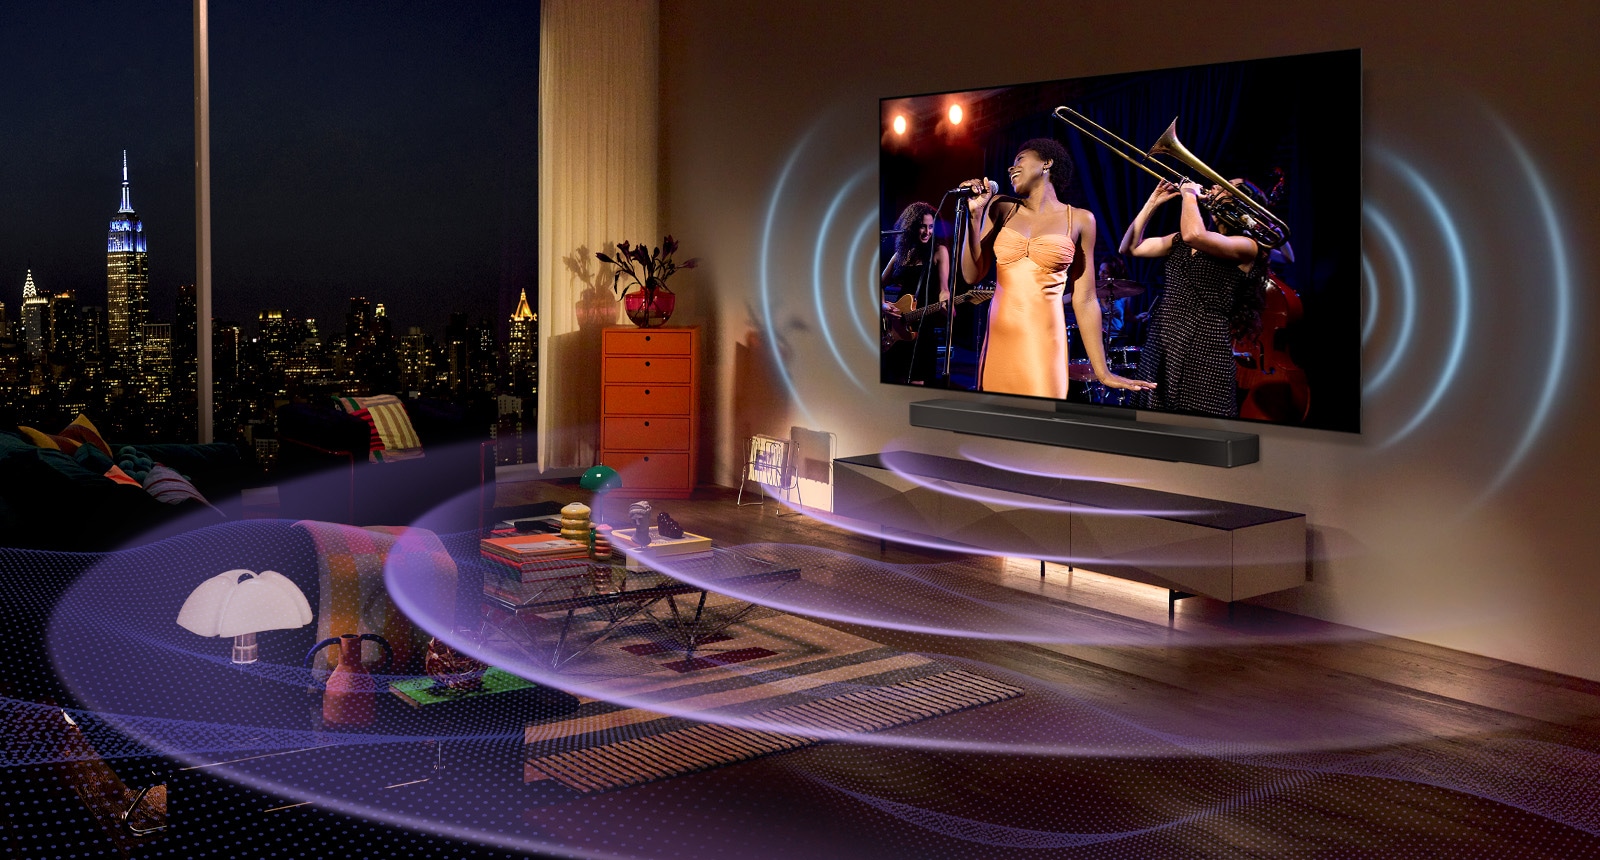 Зображення телевізора LG OLED у концертному залі.  Сині вигнуті лінії, що показують звук телевізора, і фіолетові вигнуті лінії, що представляють звук звукової панелі динаміка, що заповнює простір.